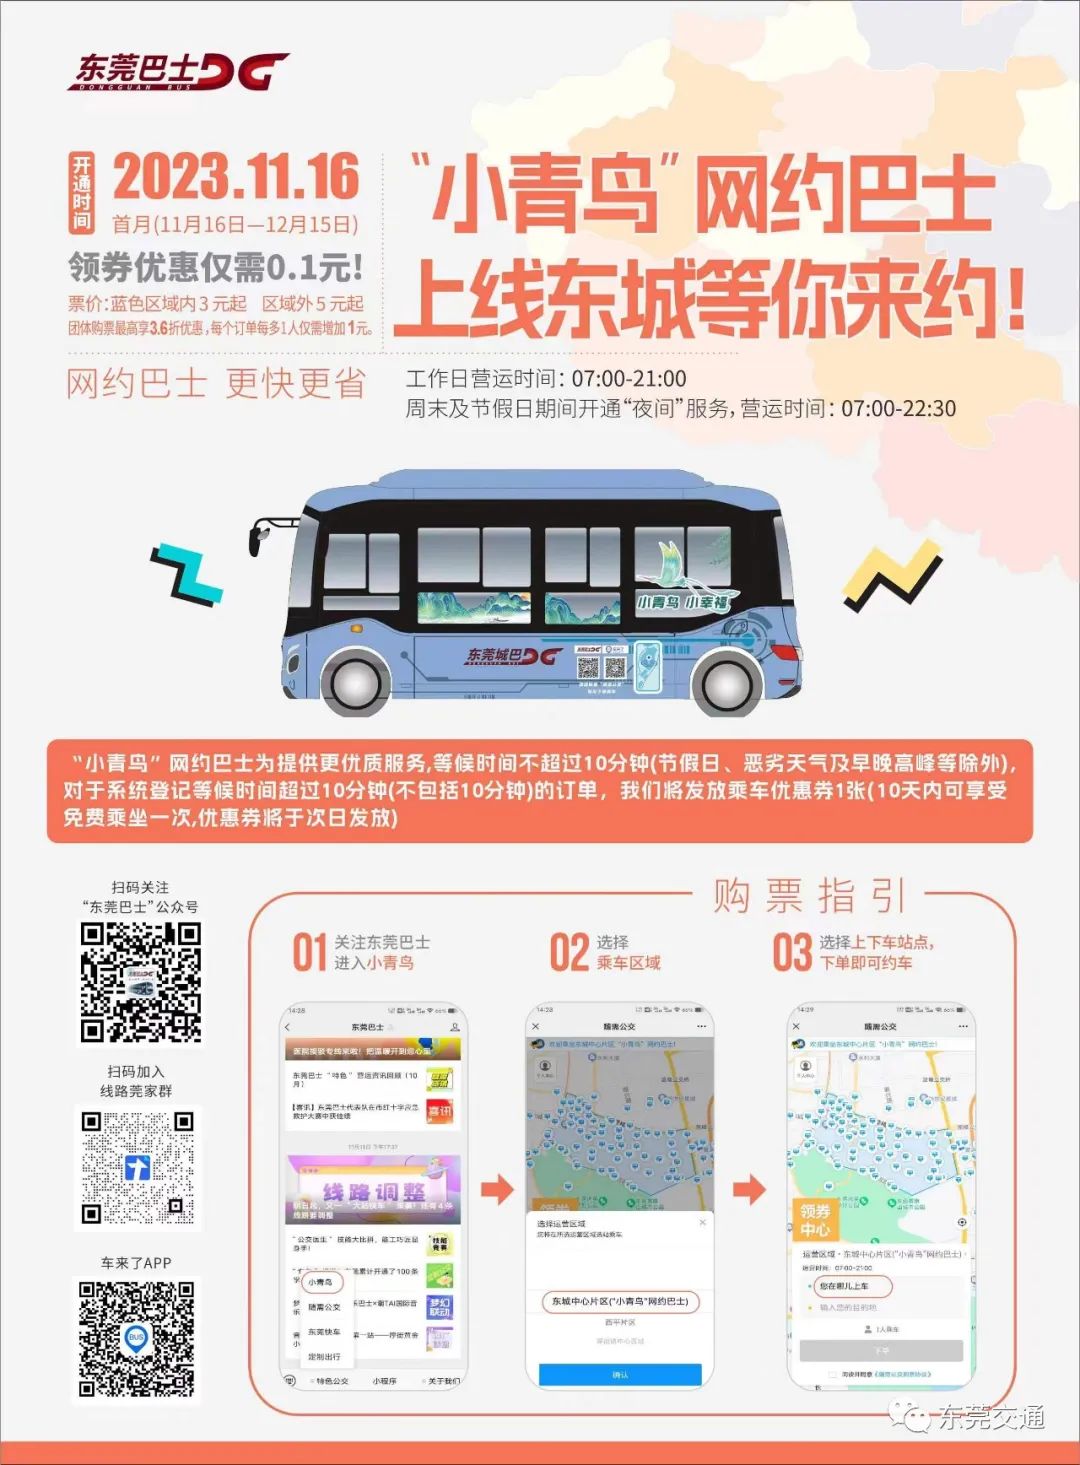 此外最近东莞巴士还开通了东莞国贸中心首末站至新塘白江地铁站的公交